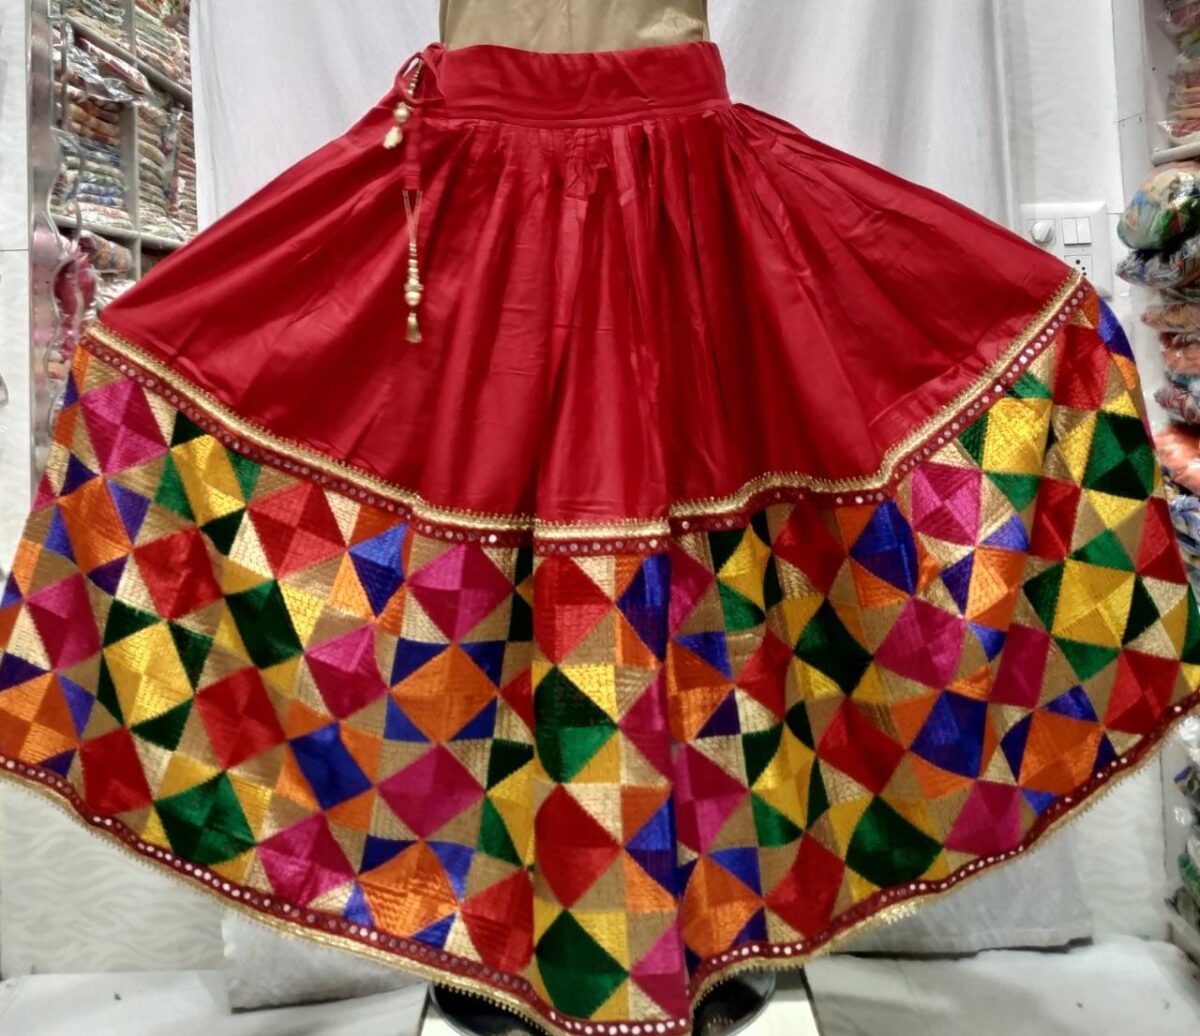 Skirt01